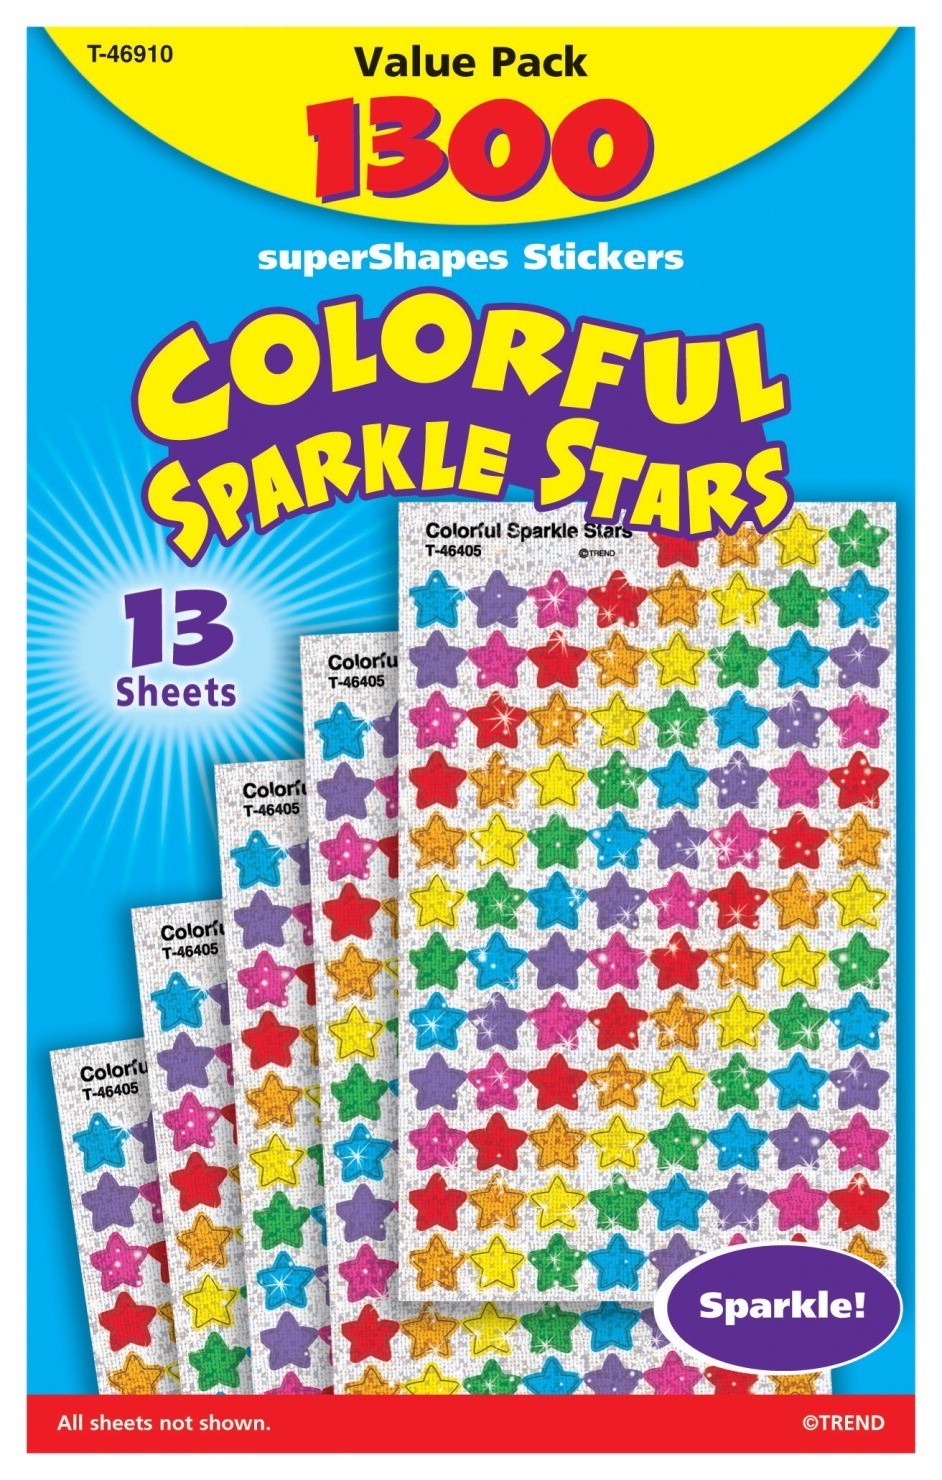 SuperShapes Colorful Sparkle Stars Sticker Set - 1300/Pkg